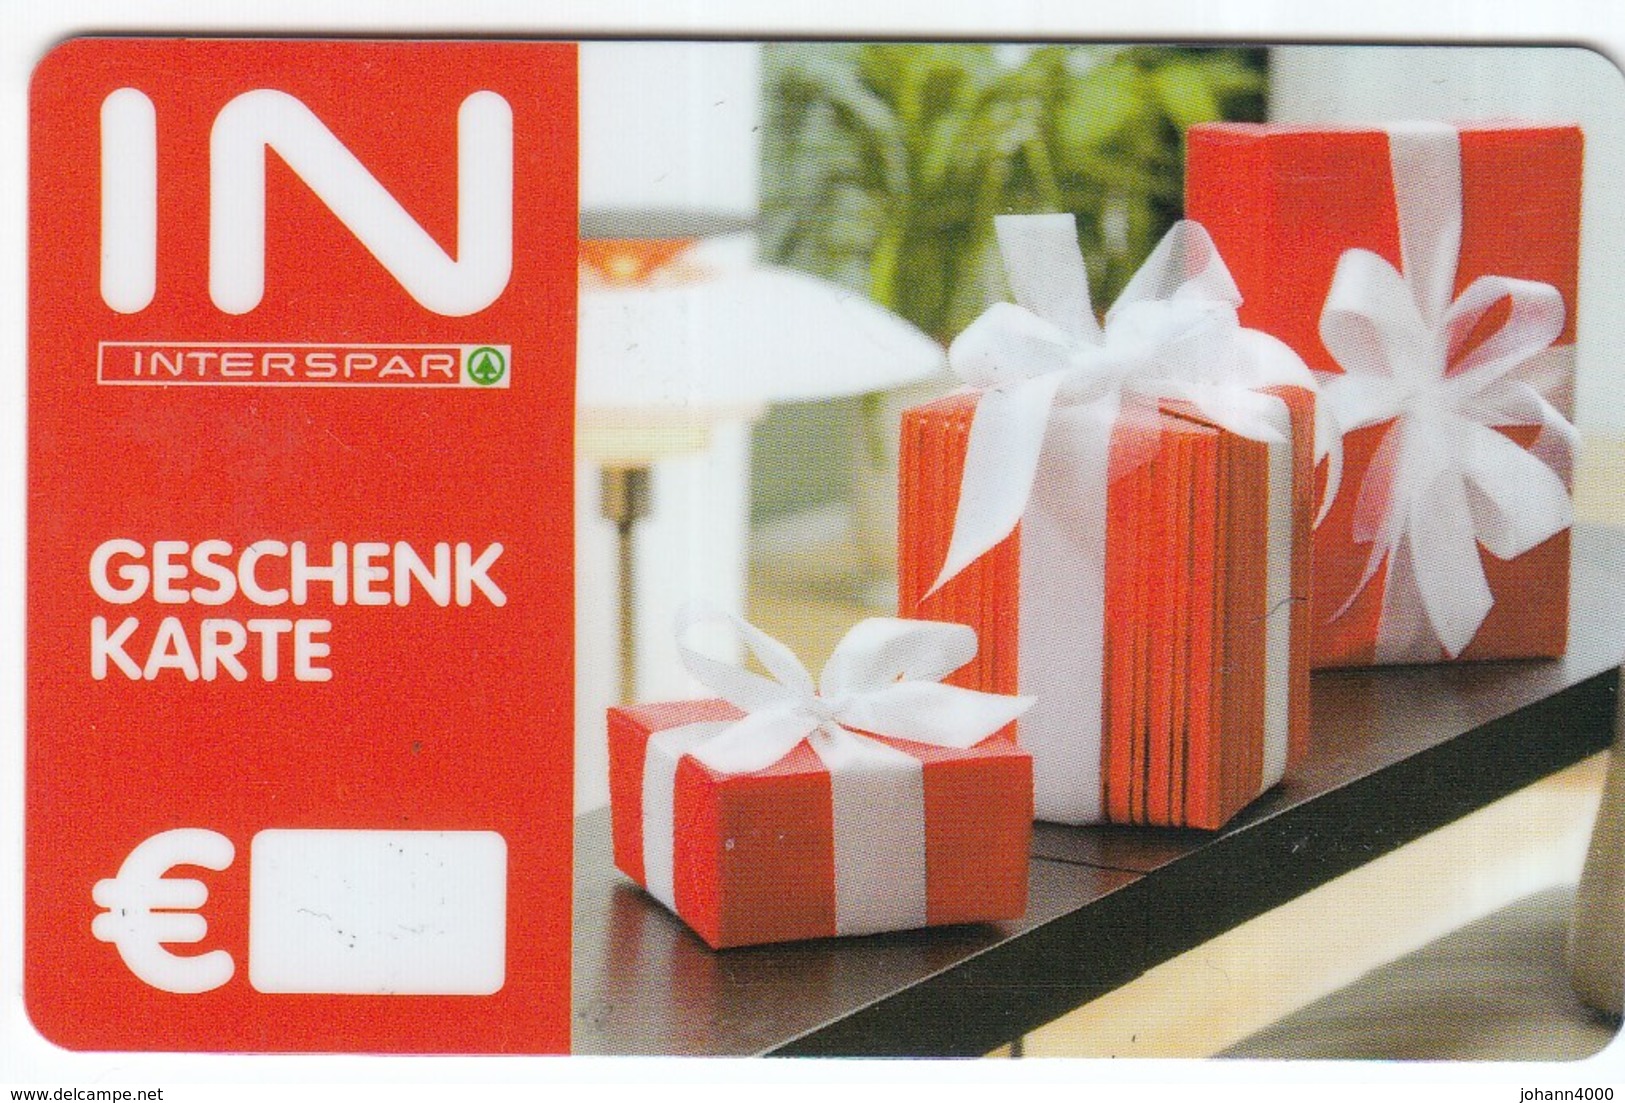 Geschenkkarte Interspar   Gift - Gift Cards